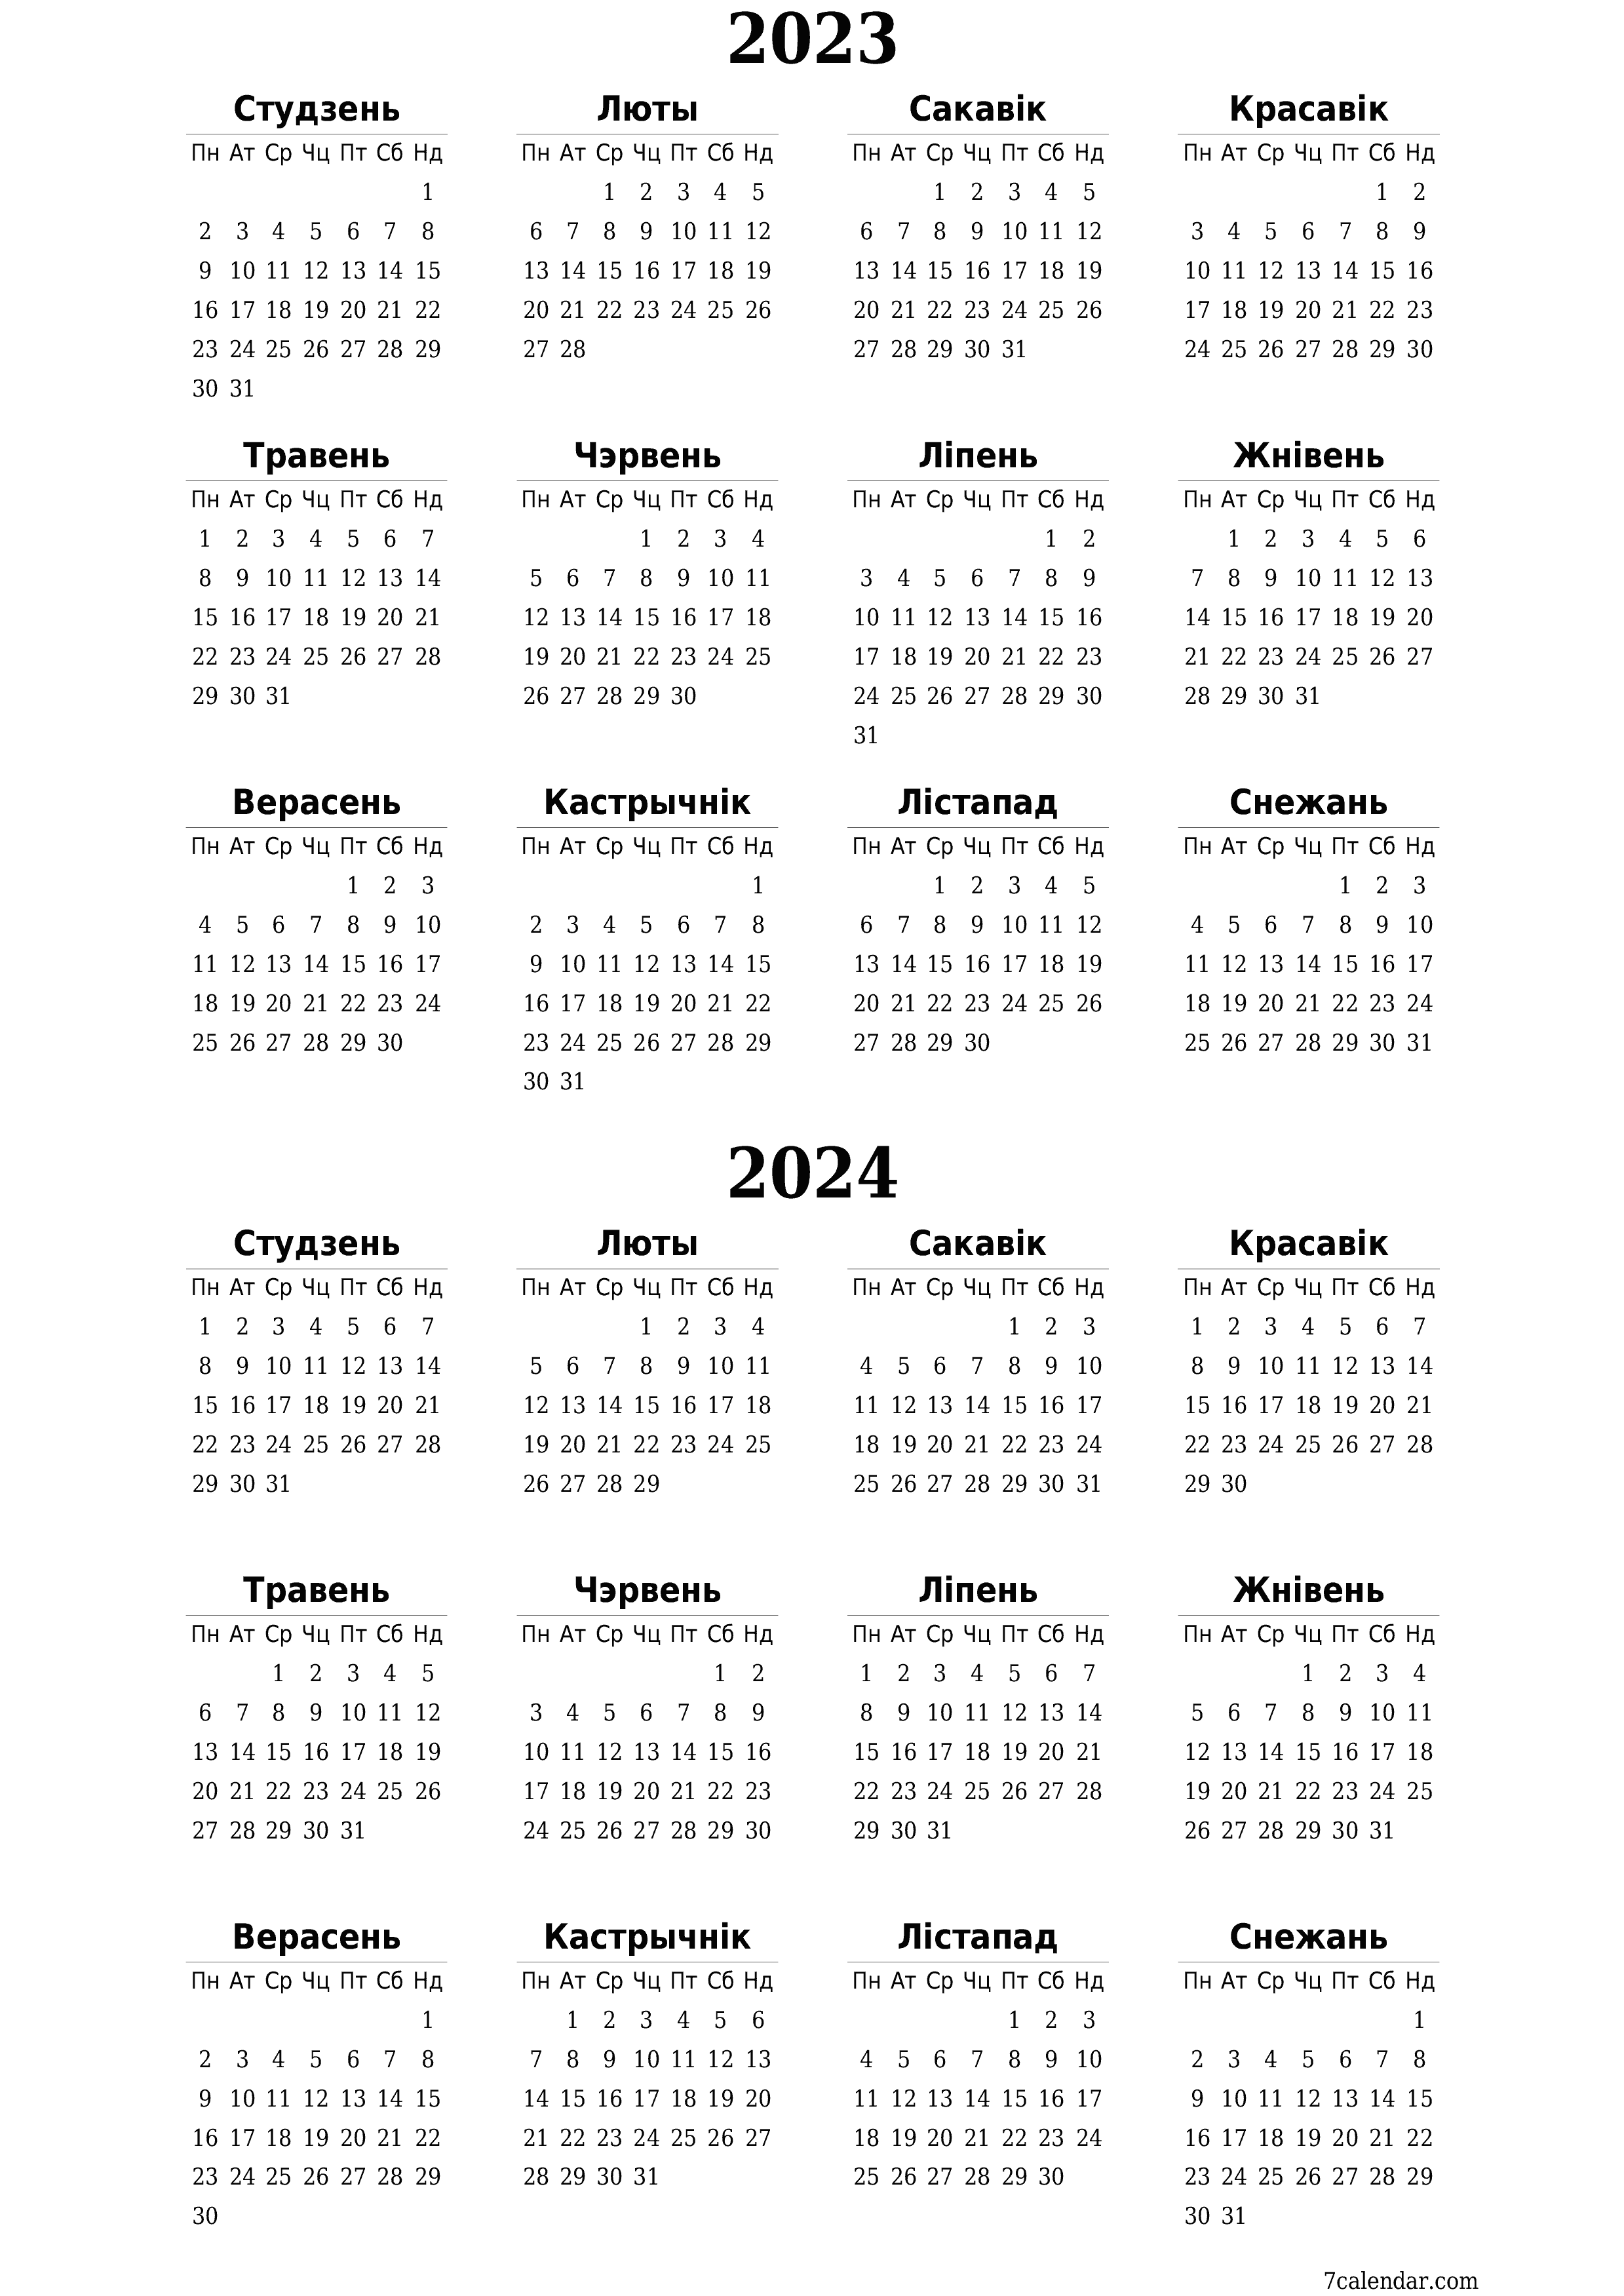  для друку насценны шаблон календара бясплатны вертыкальны Штогадовы каляндар Верасень (Вер) 2023